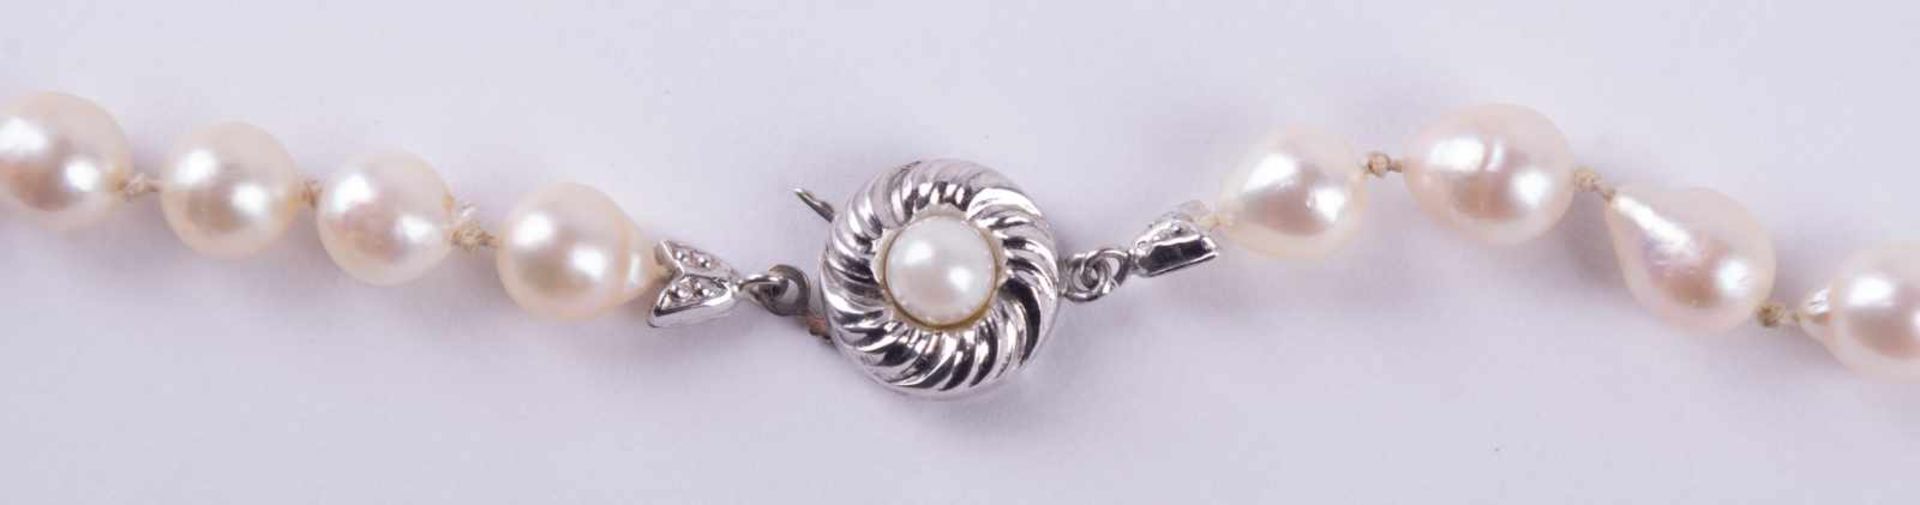 Perlenkette um 1930 Verschluss WG 333/000 mit Perle besetzt, L: 60 cm, Pearl necklace about 1930 - Image 3 of 4